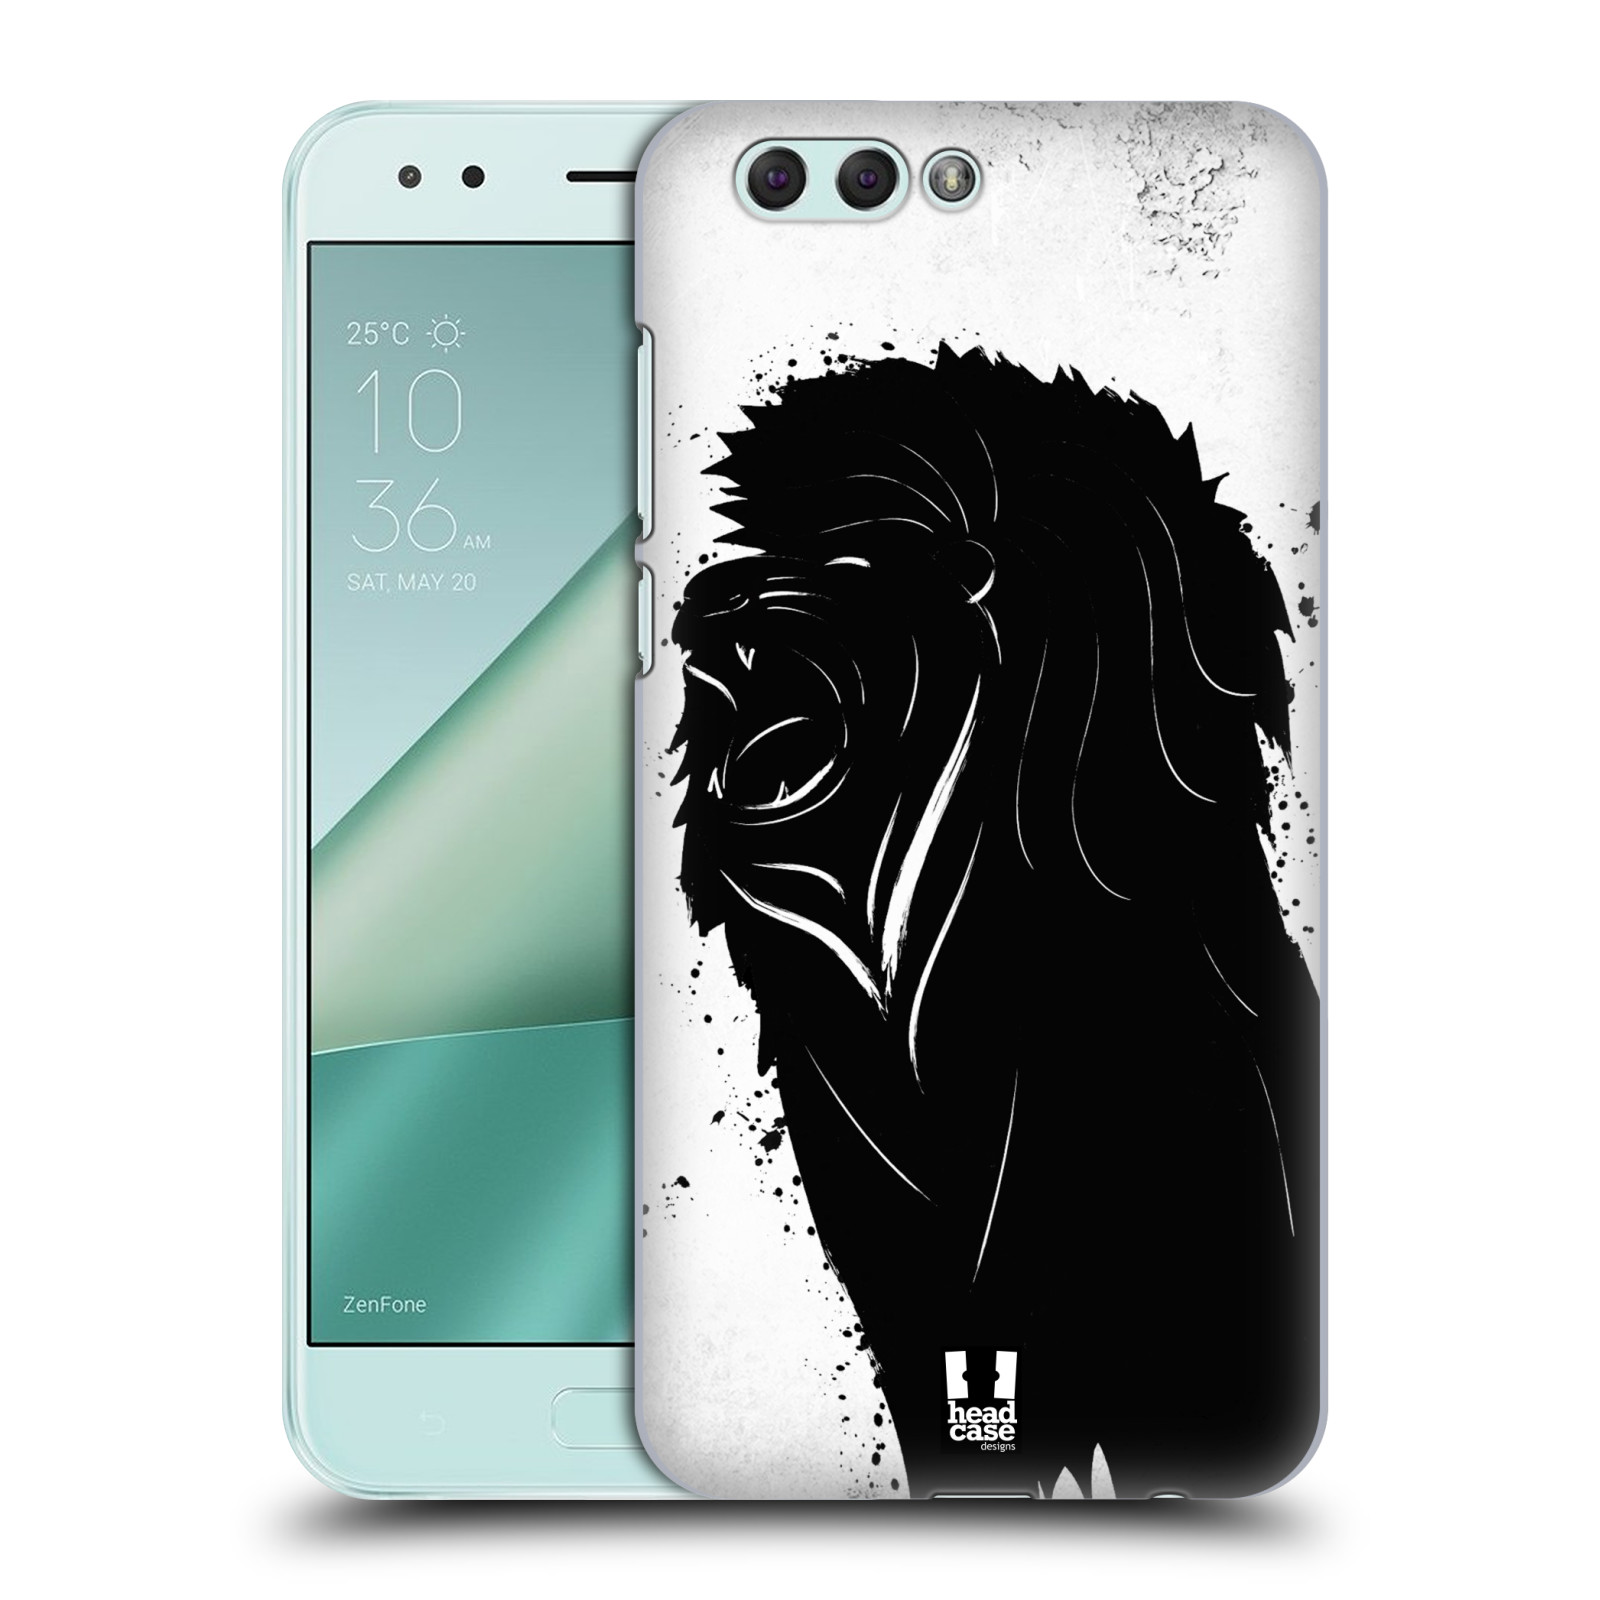 HEAD CASE plastový obal na mobil Asus Zenfone 4 ZE554KL vzor Kresba tuš zvíře lev